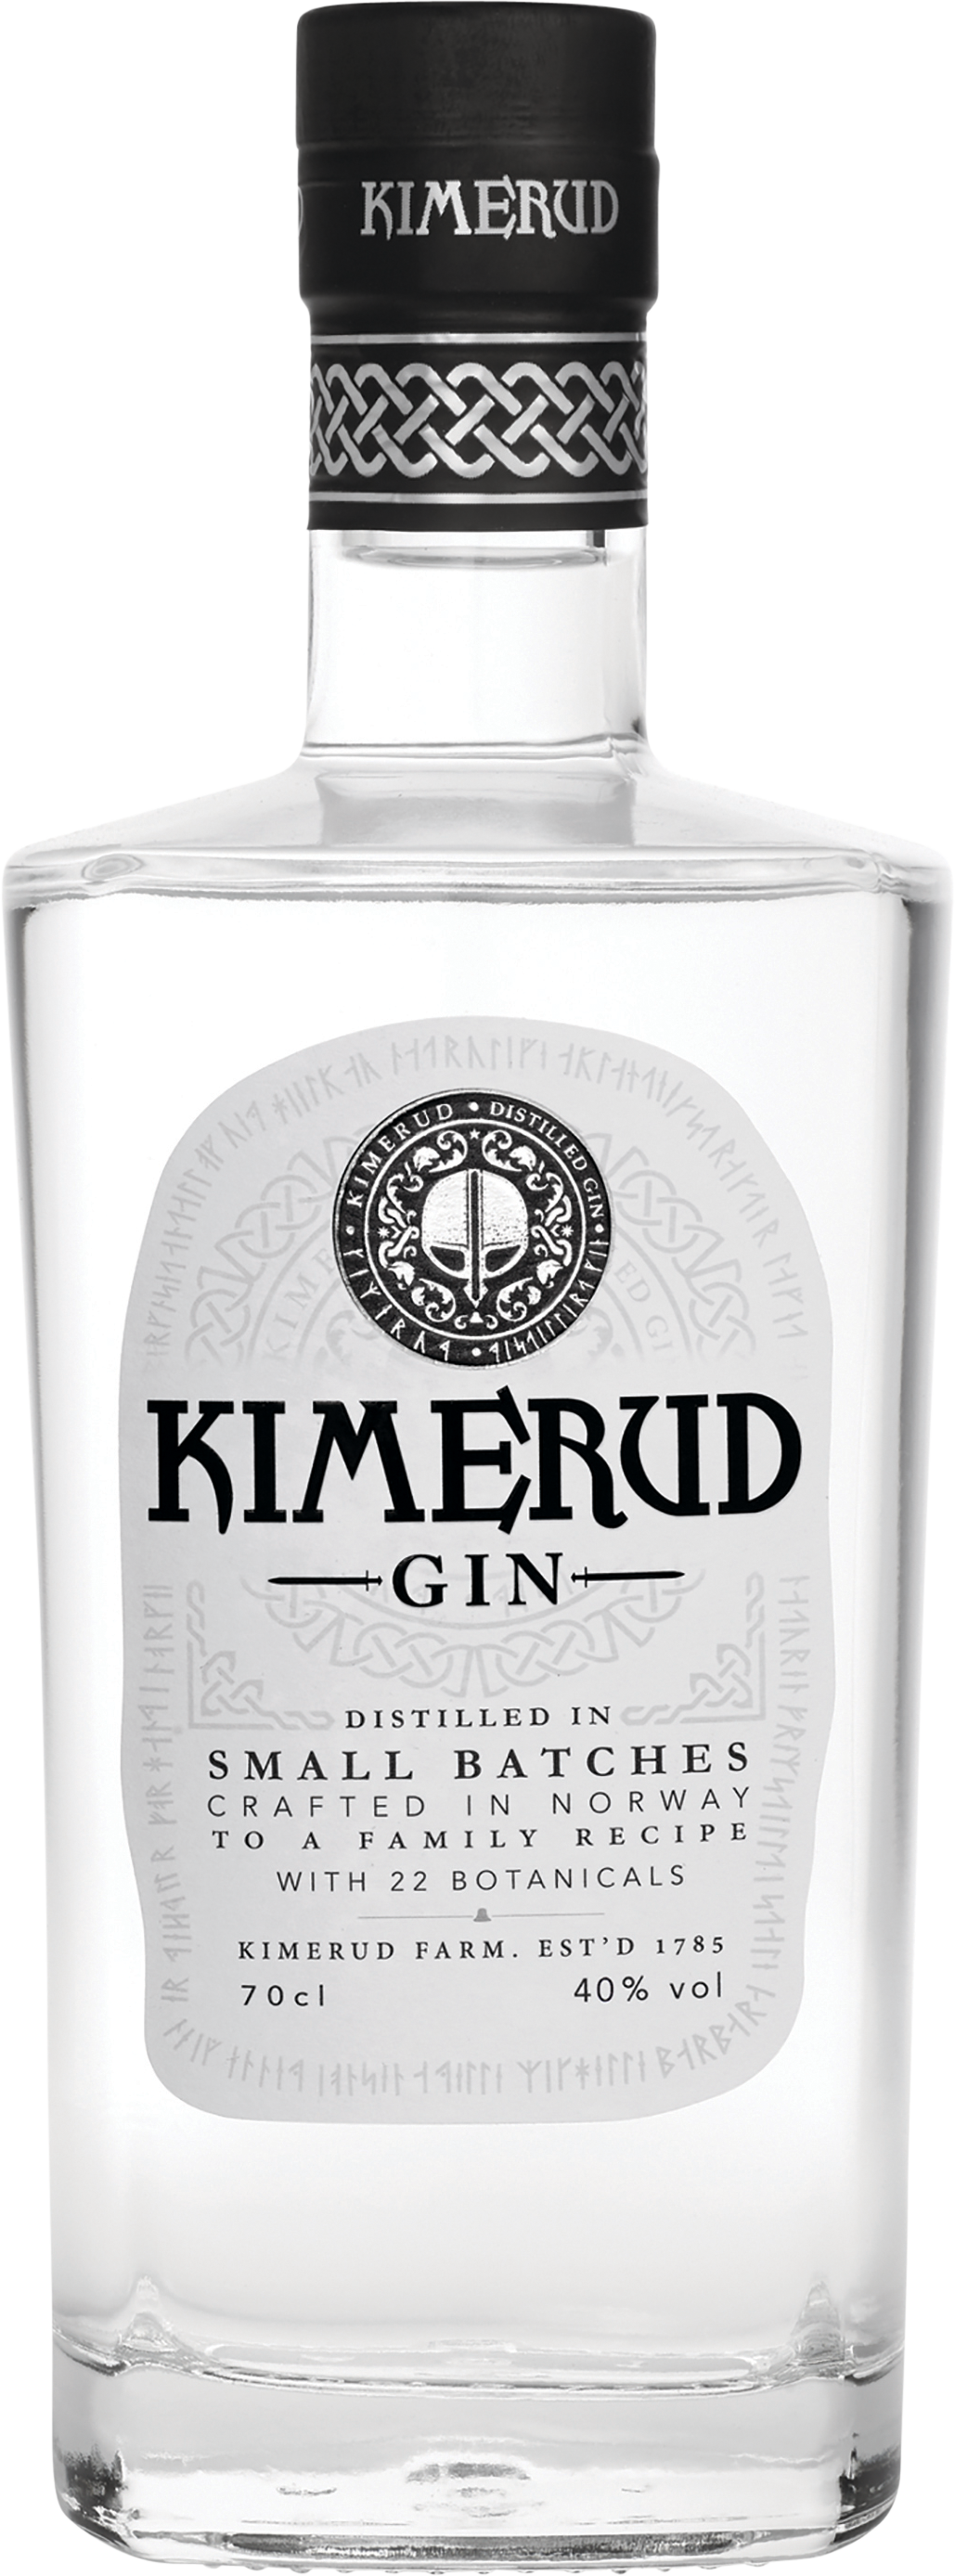 Kimerud Norway Craft Distilled Gin 40% 0,7l